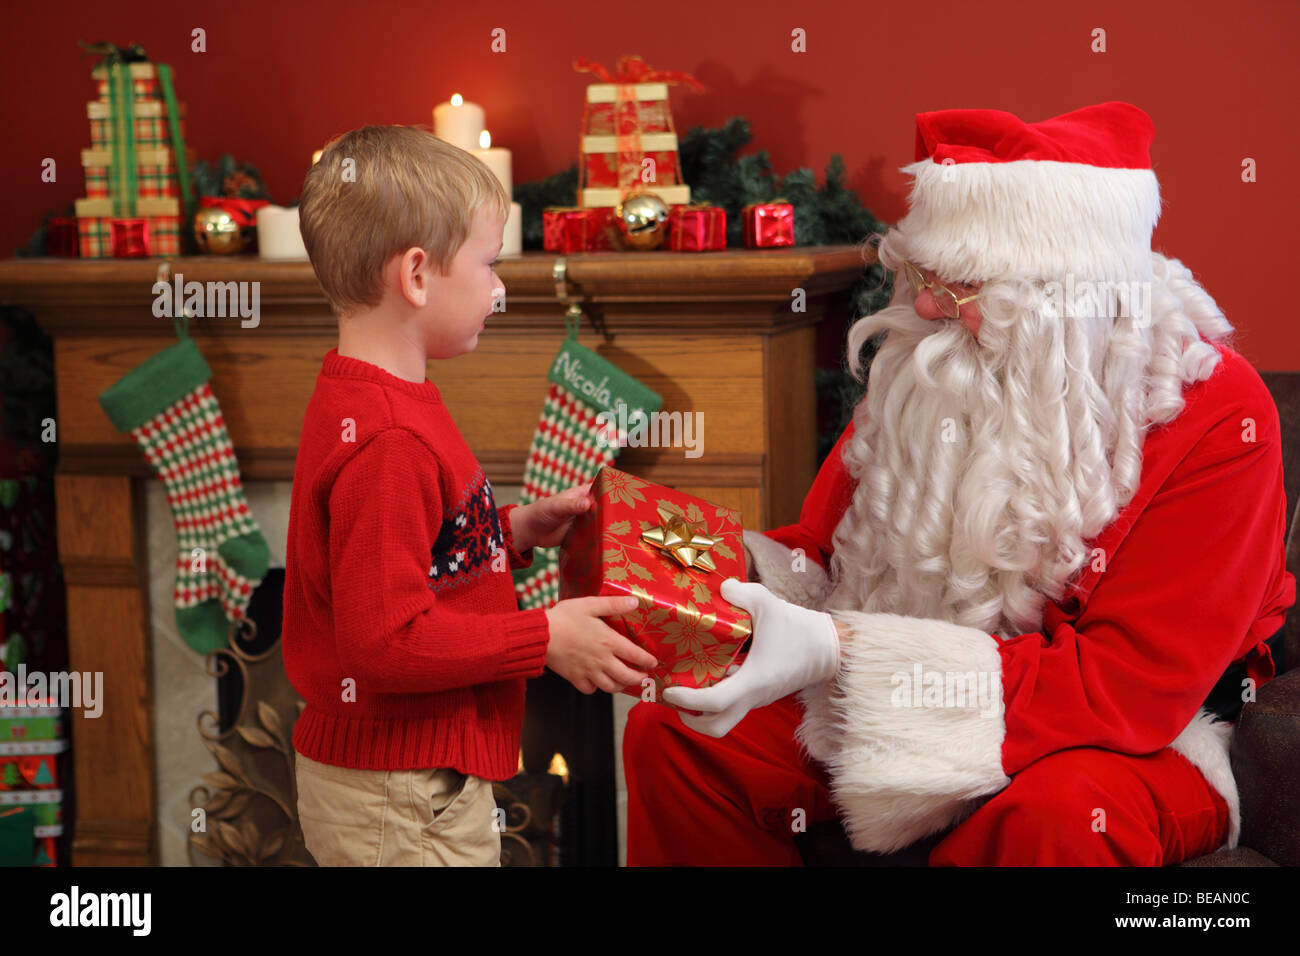 Santa Claus gives young boy Christmas gift Stock Photo